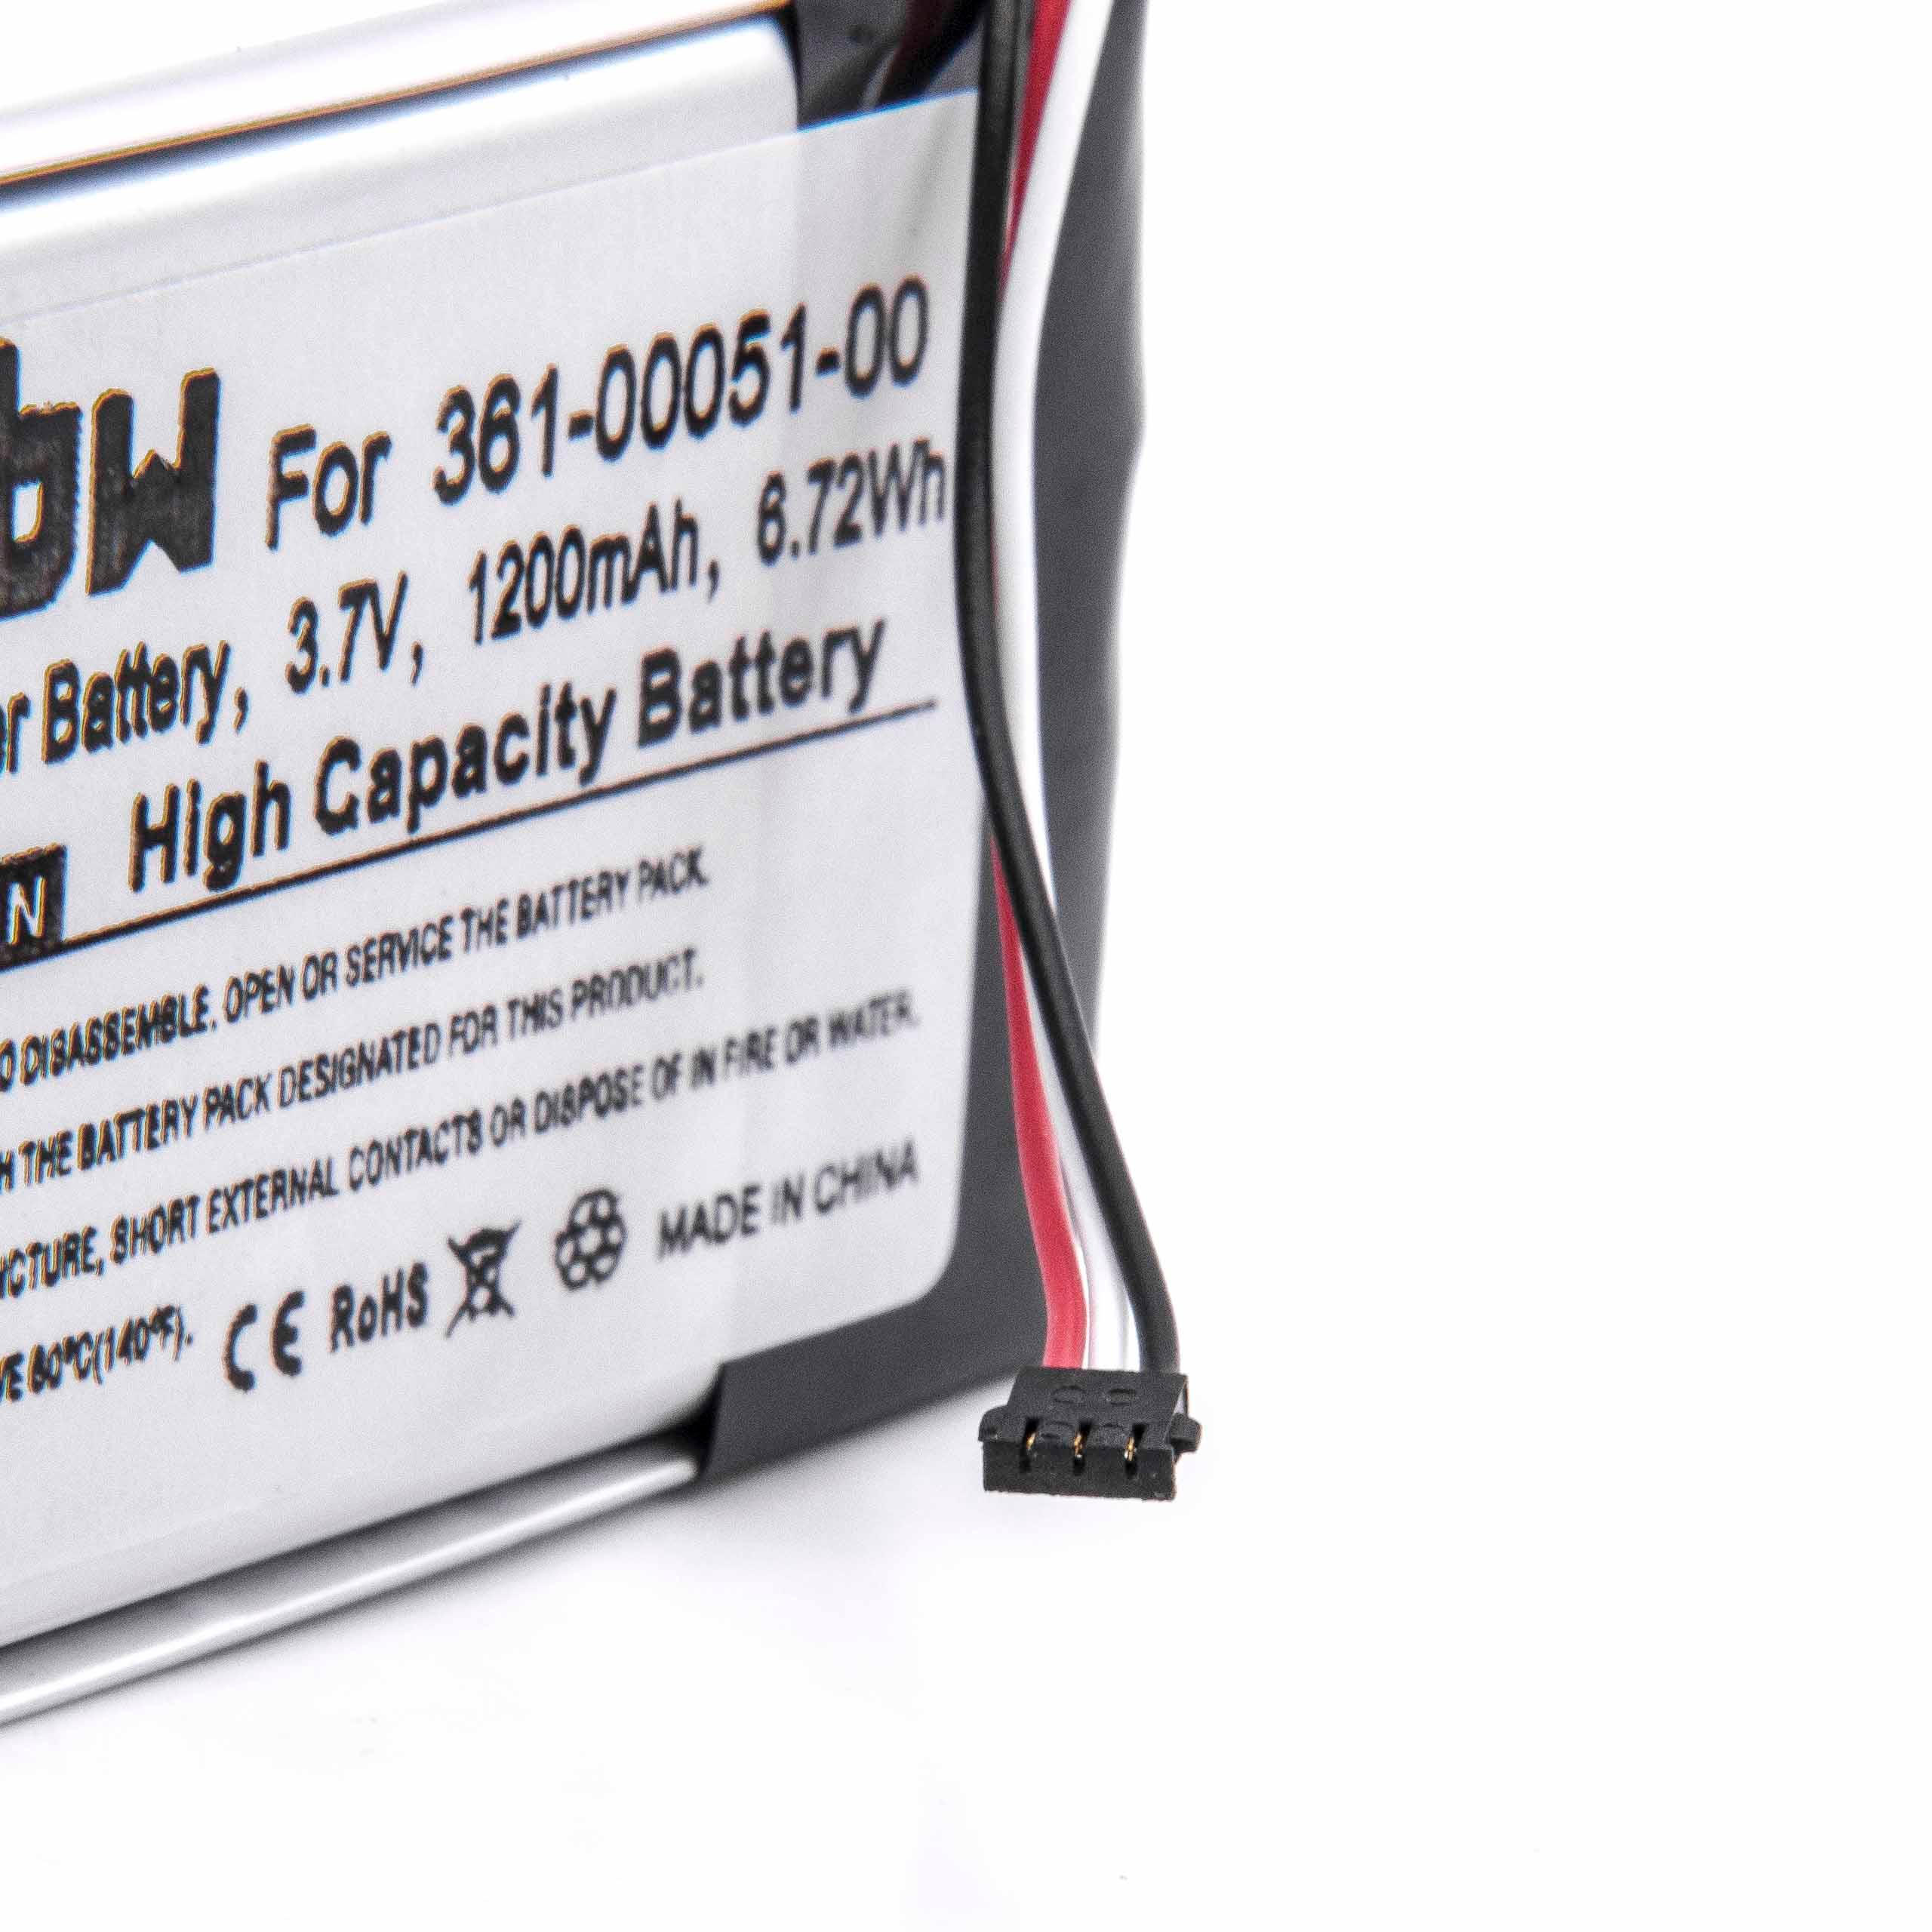 Batterie remplace Garmin 361-00051-01, 361-00051-02, 361-00051-00 pour navigation GPS - 1200mAh 3,7V Li-ion